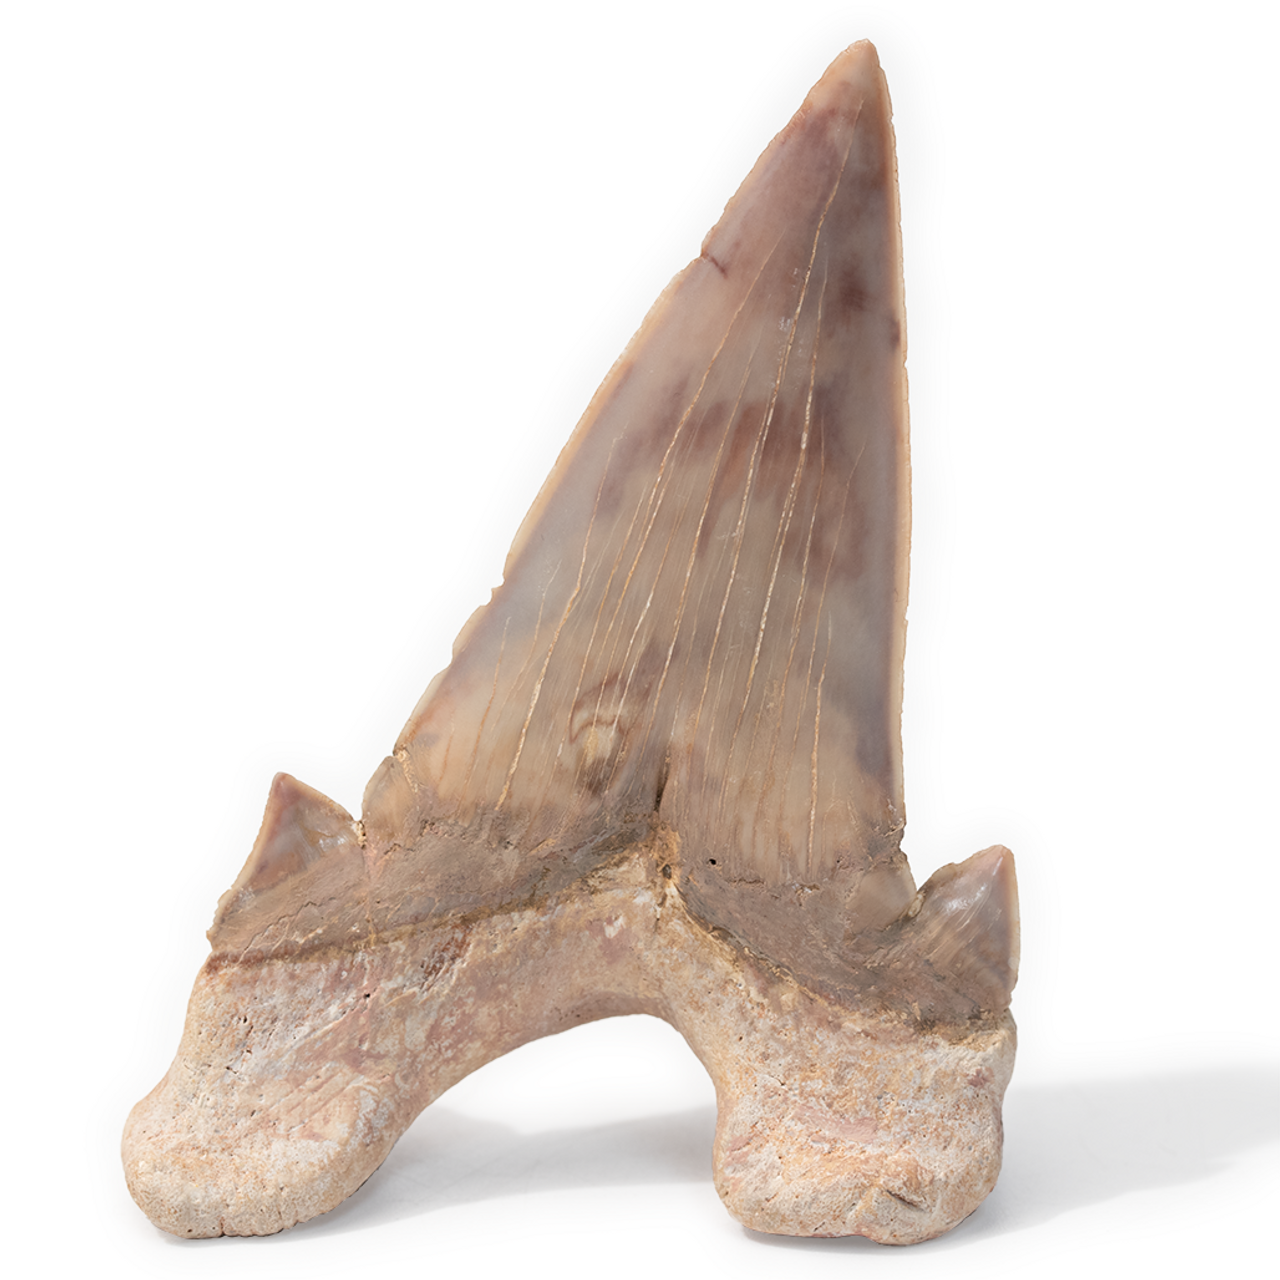 shark fossils